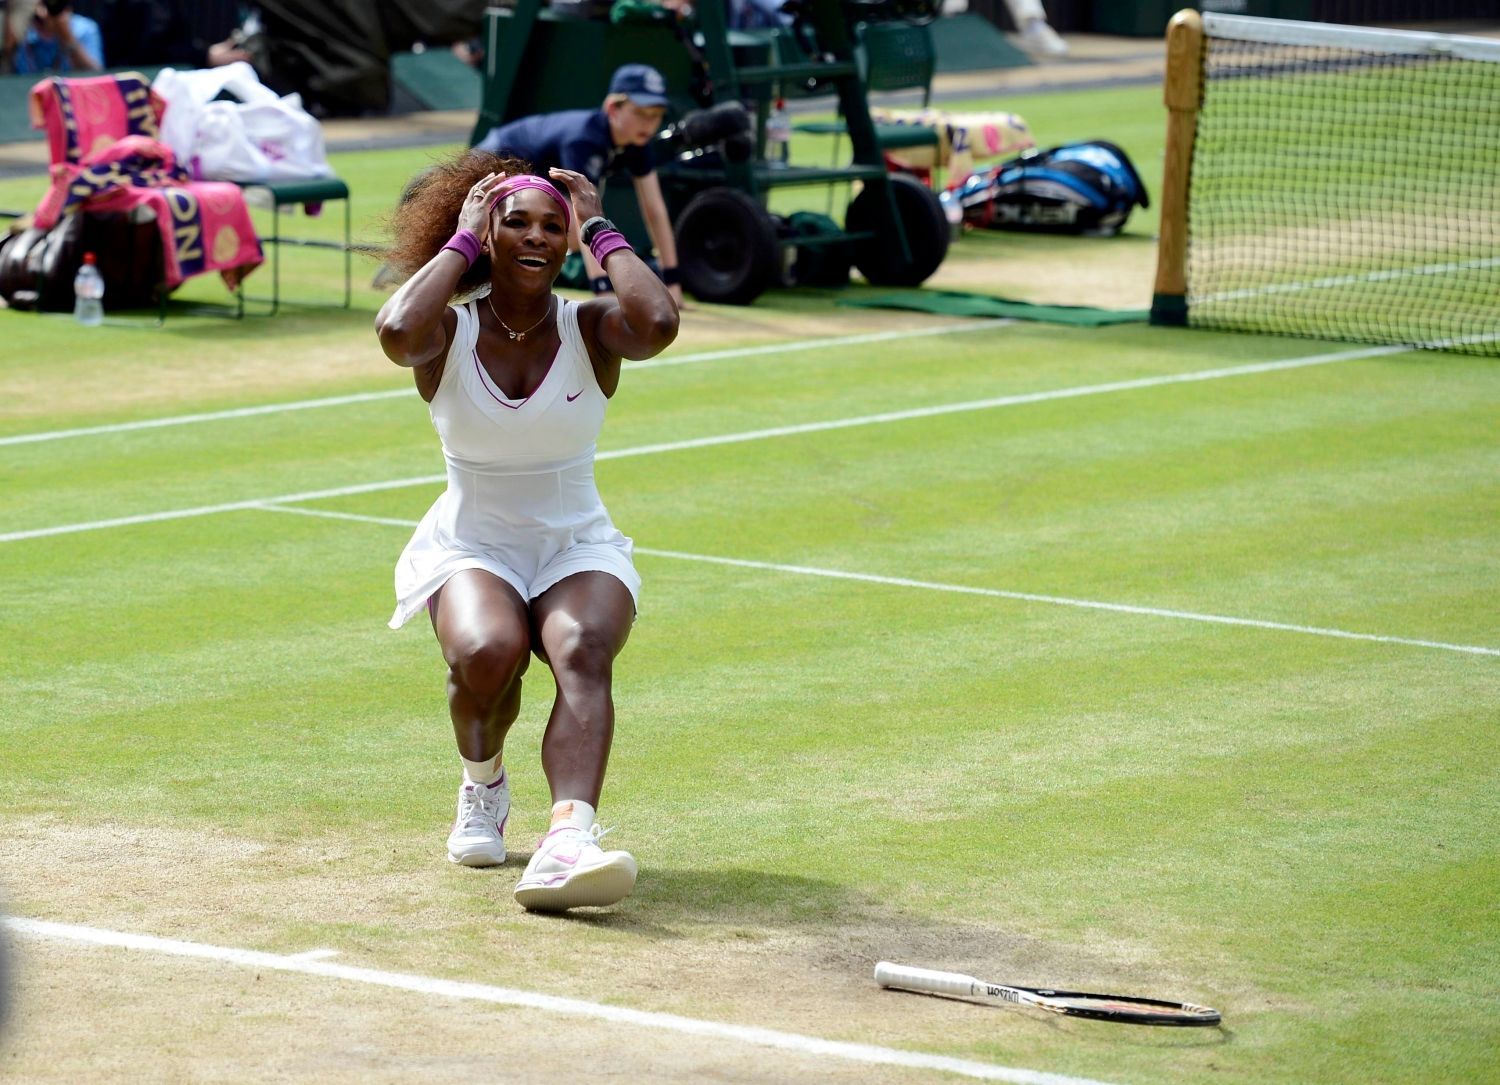 Americká tenistka Serena Williamsová slaví vítězství ve finále Wimbledonu 2012 nad Polkou Agnieszkou Radwaňskou.